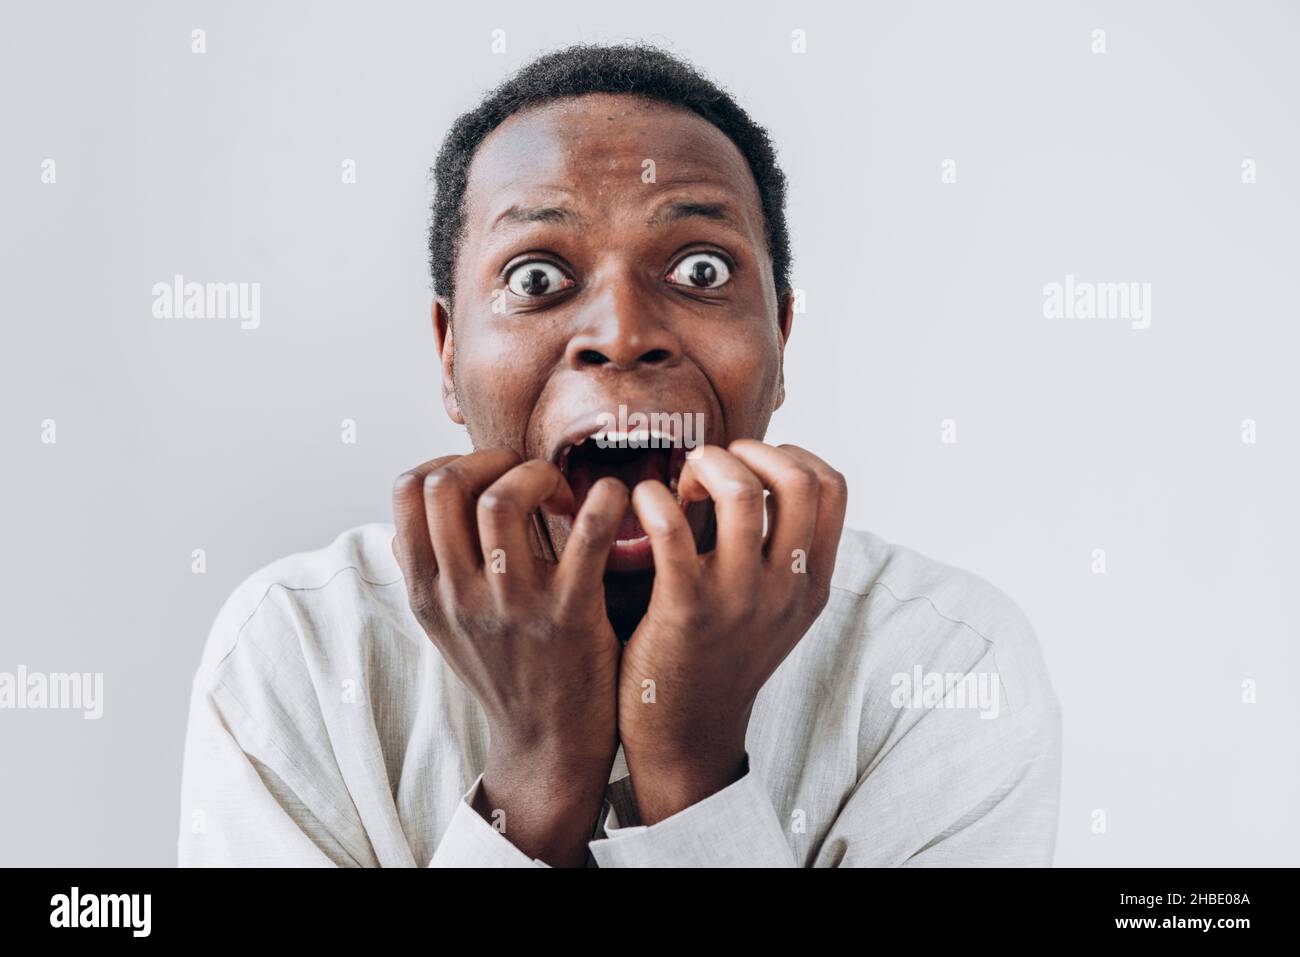 Ritratto di un uomo africano terrorizzato fissando in orrore la macchina fotografica e mettendo le sue mani alla bocca in una camicia di lino chiaro su sfondo bianco. Sorpresa o paura molto forte, orrore negli occhi. Foto Stock